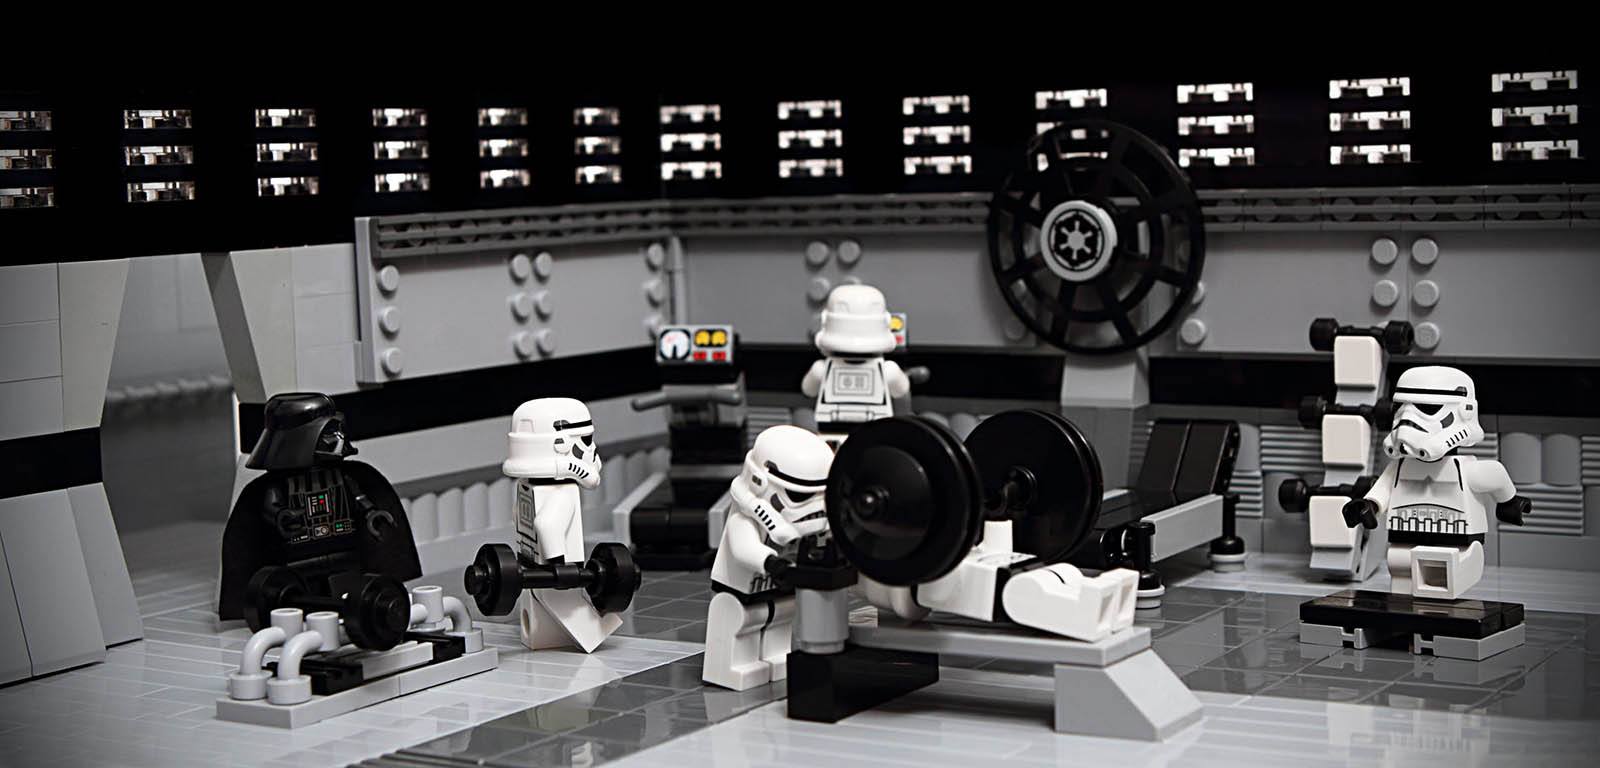 Comment choisir sa salle de sport - Legos